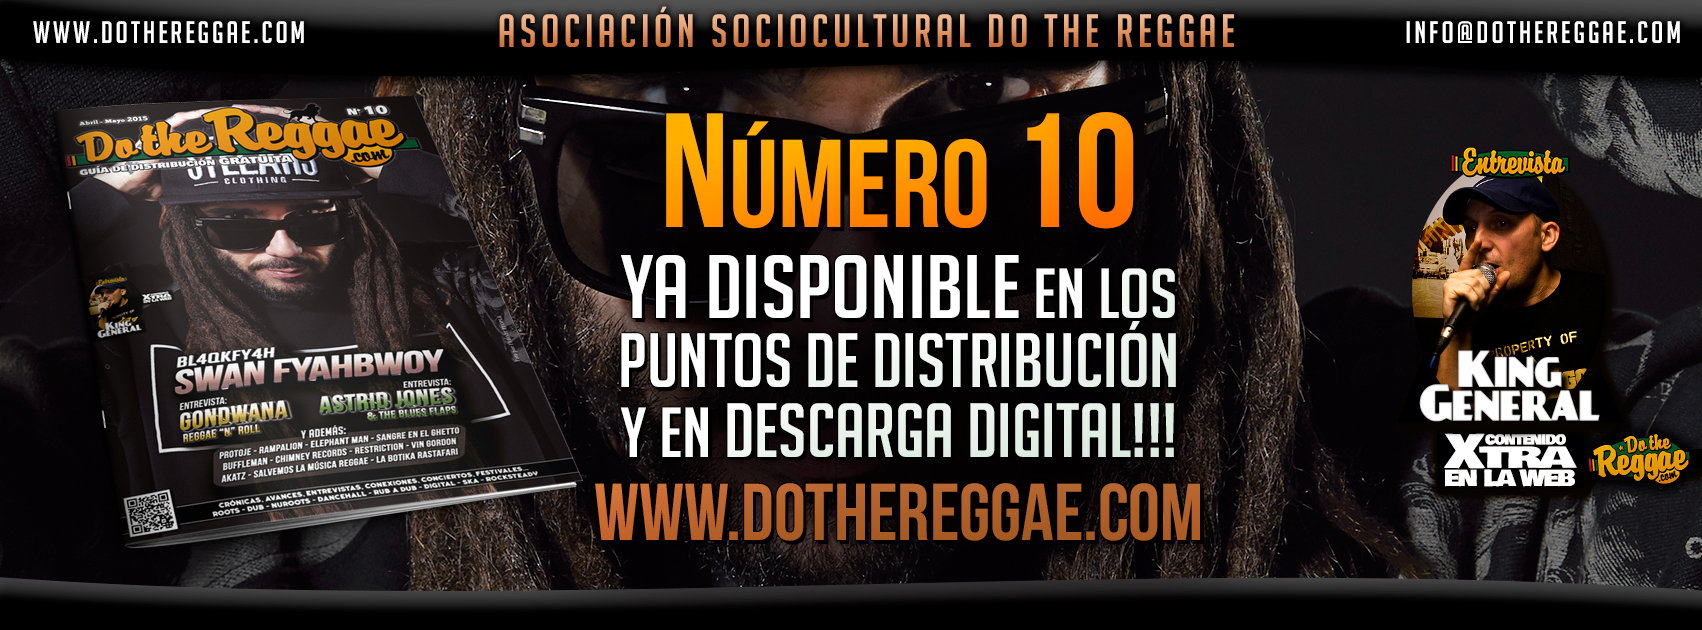 Número 10 de DotheReggae ya disponible!